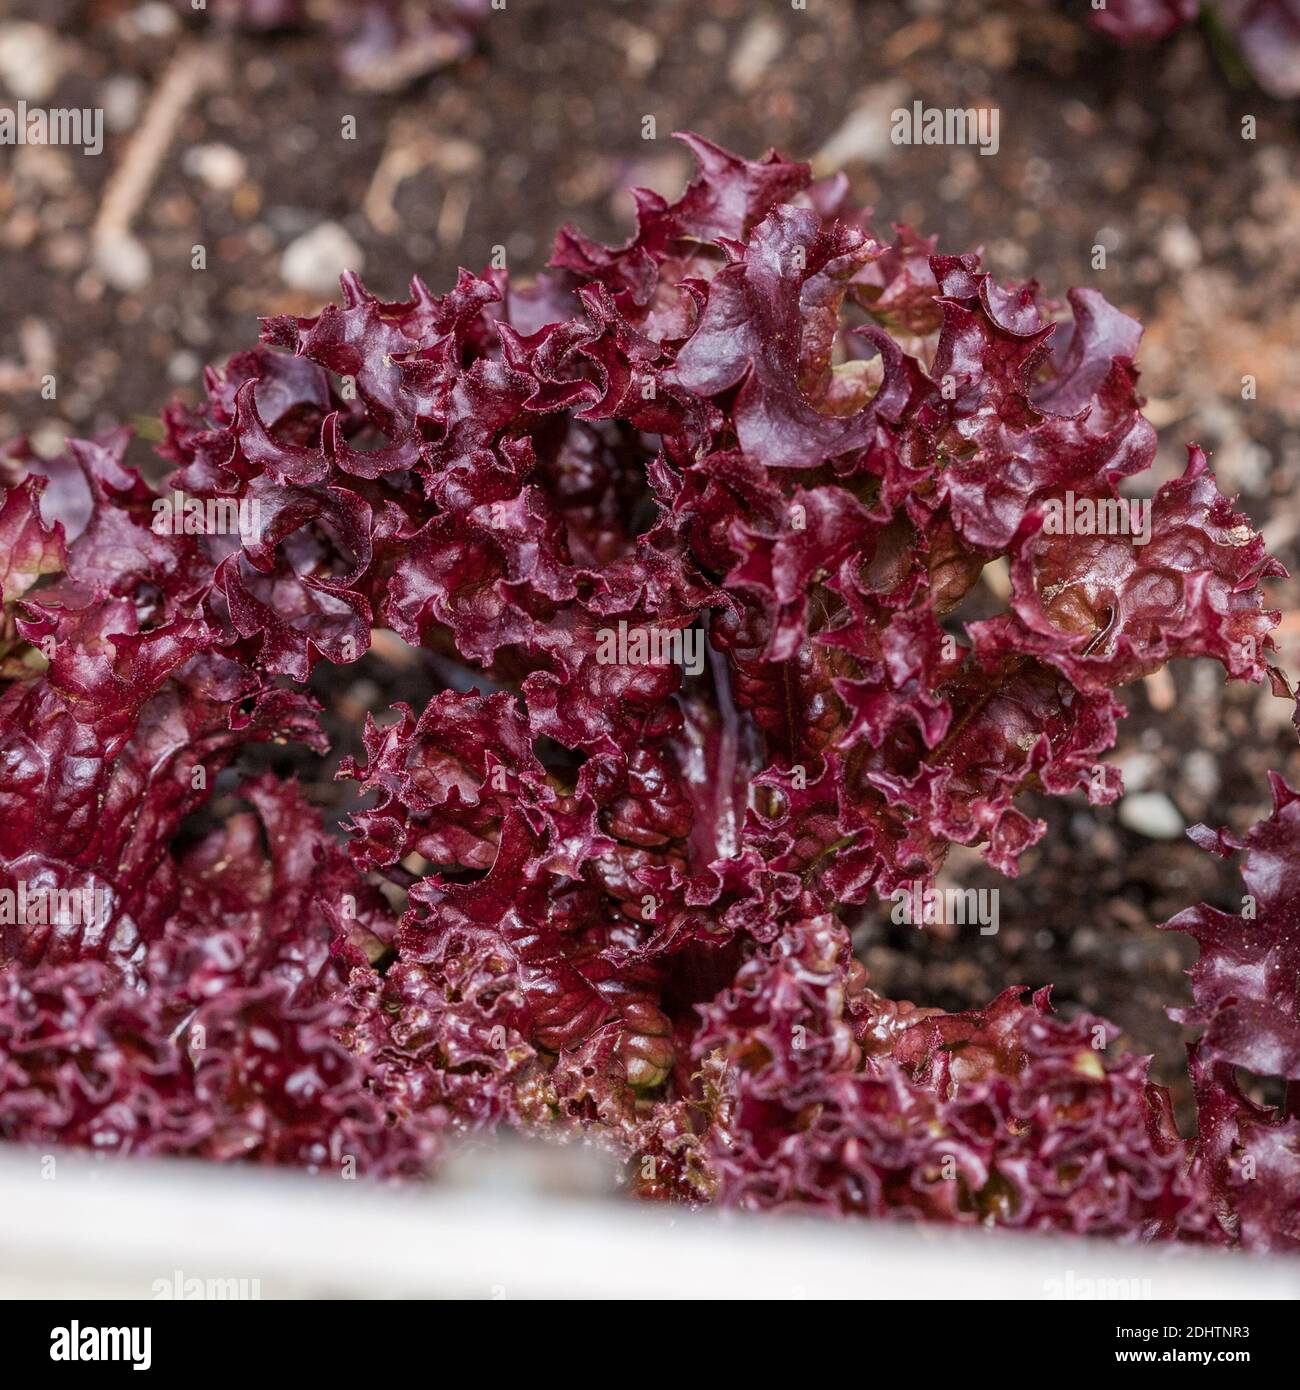 Lollo rossa Salat, Sallat (Lactuca sativa) Stockfoto